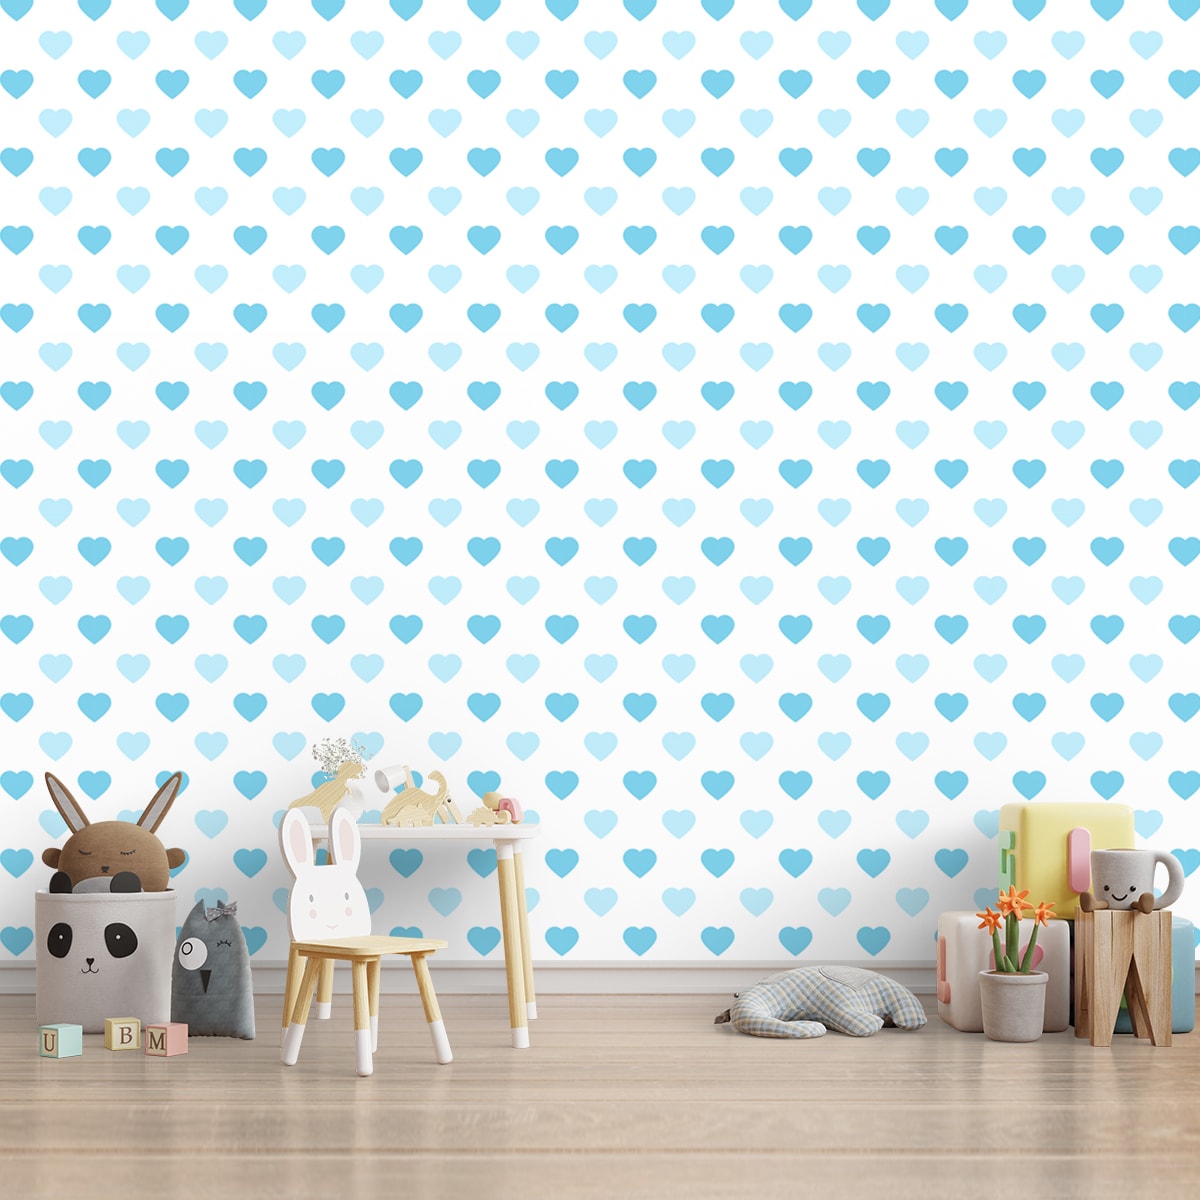 Blue Heart Pattern Wallpaper for Boys Room, Customised